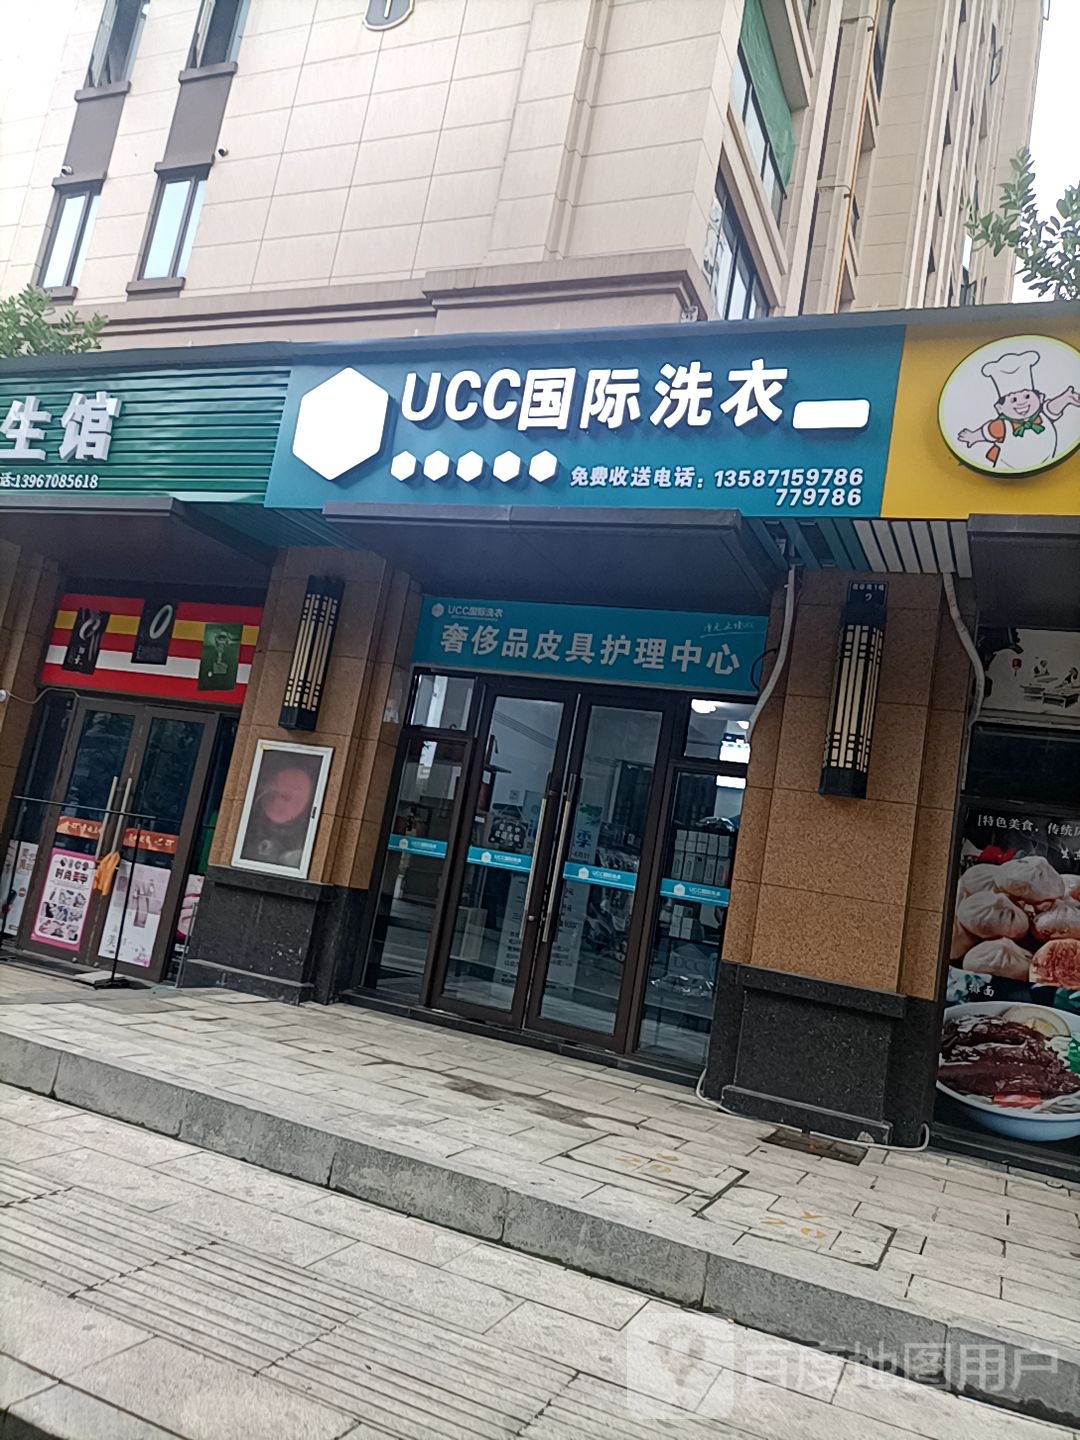 UCC国际洗衣(望湖路店)